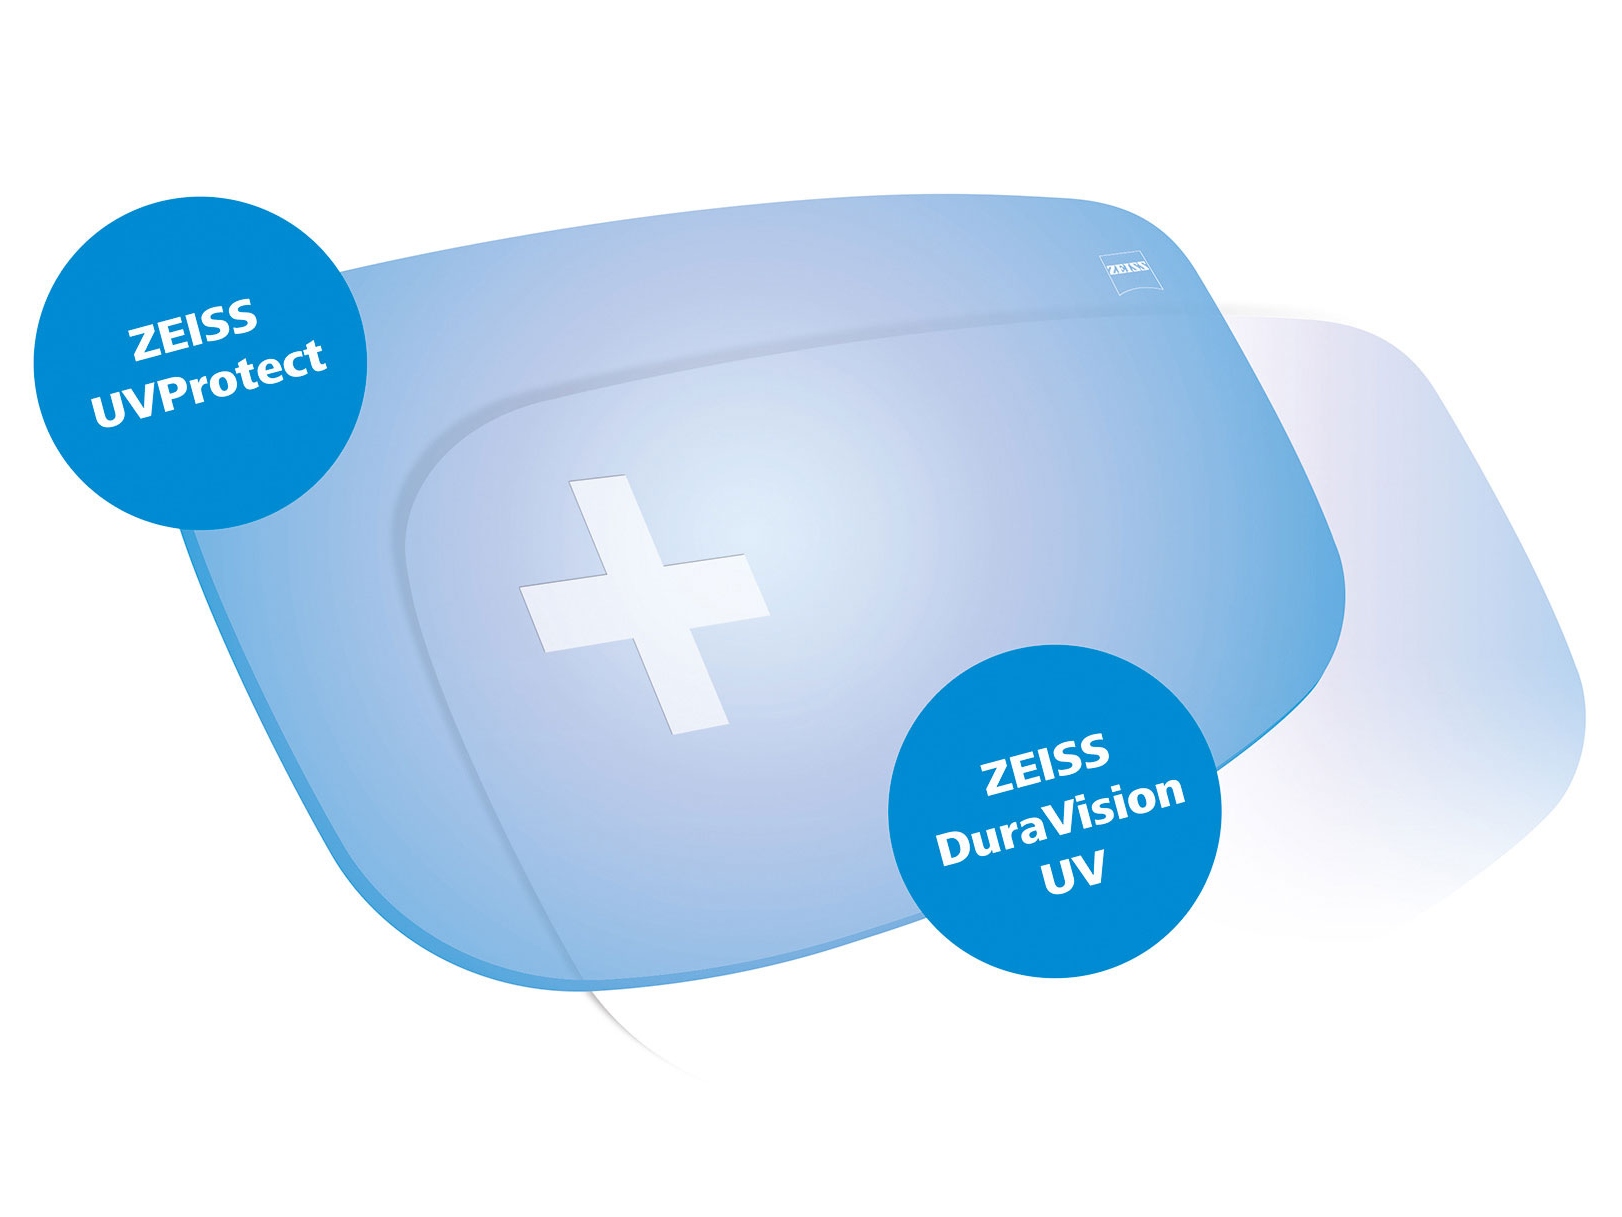 Todas las lentes ZEISS vienen de serie con protección UV desde cualquier ángulo. El gráfico muestra dos soluciones.